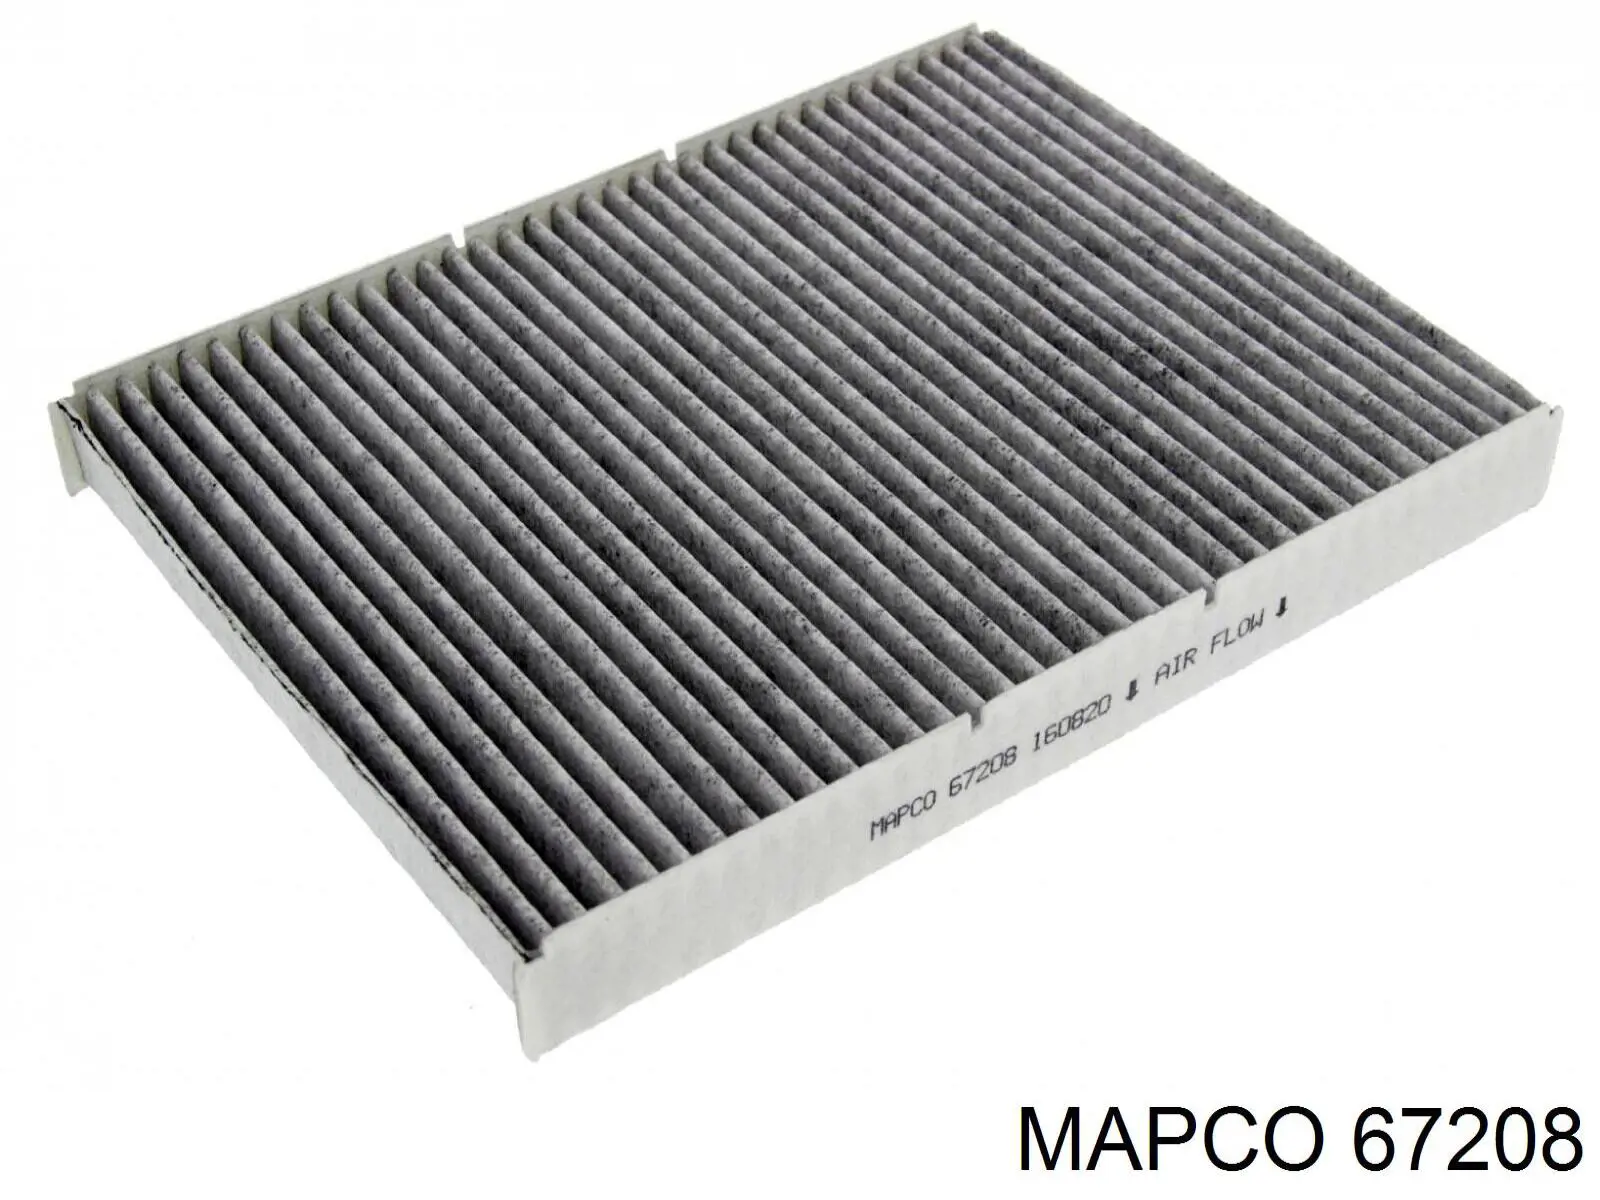 67208 Mapco filtro habitáculo